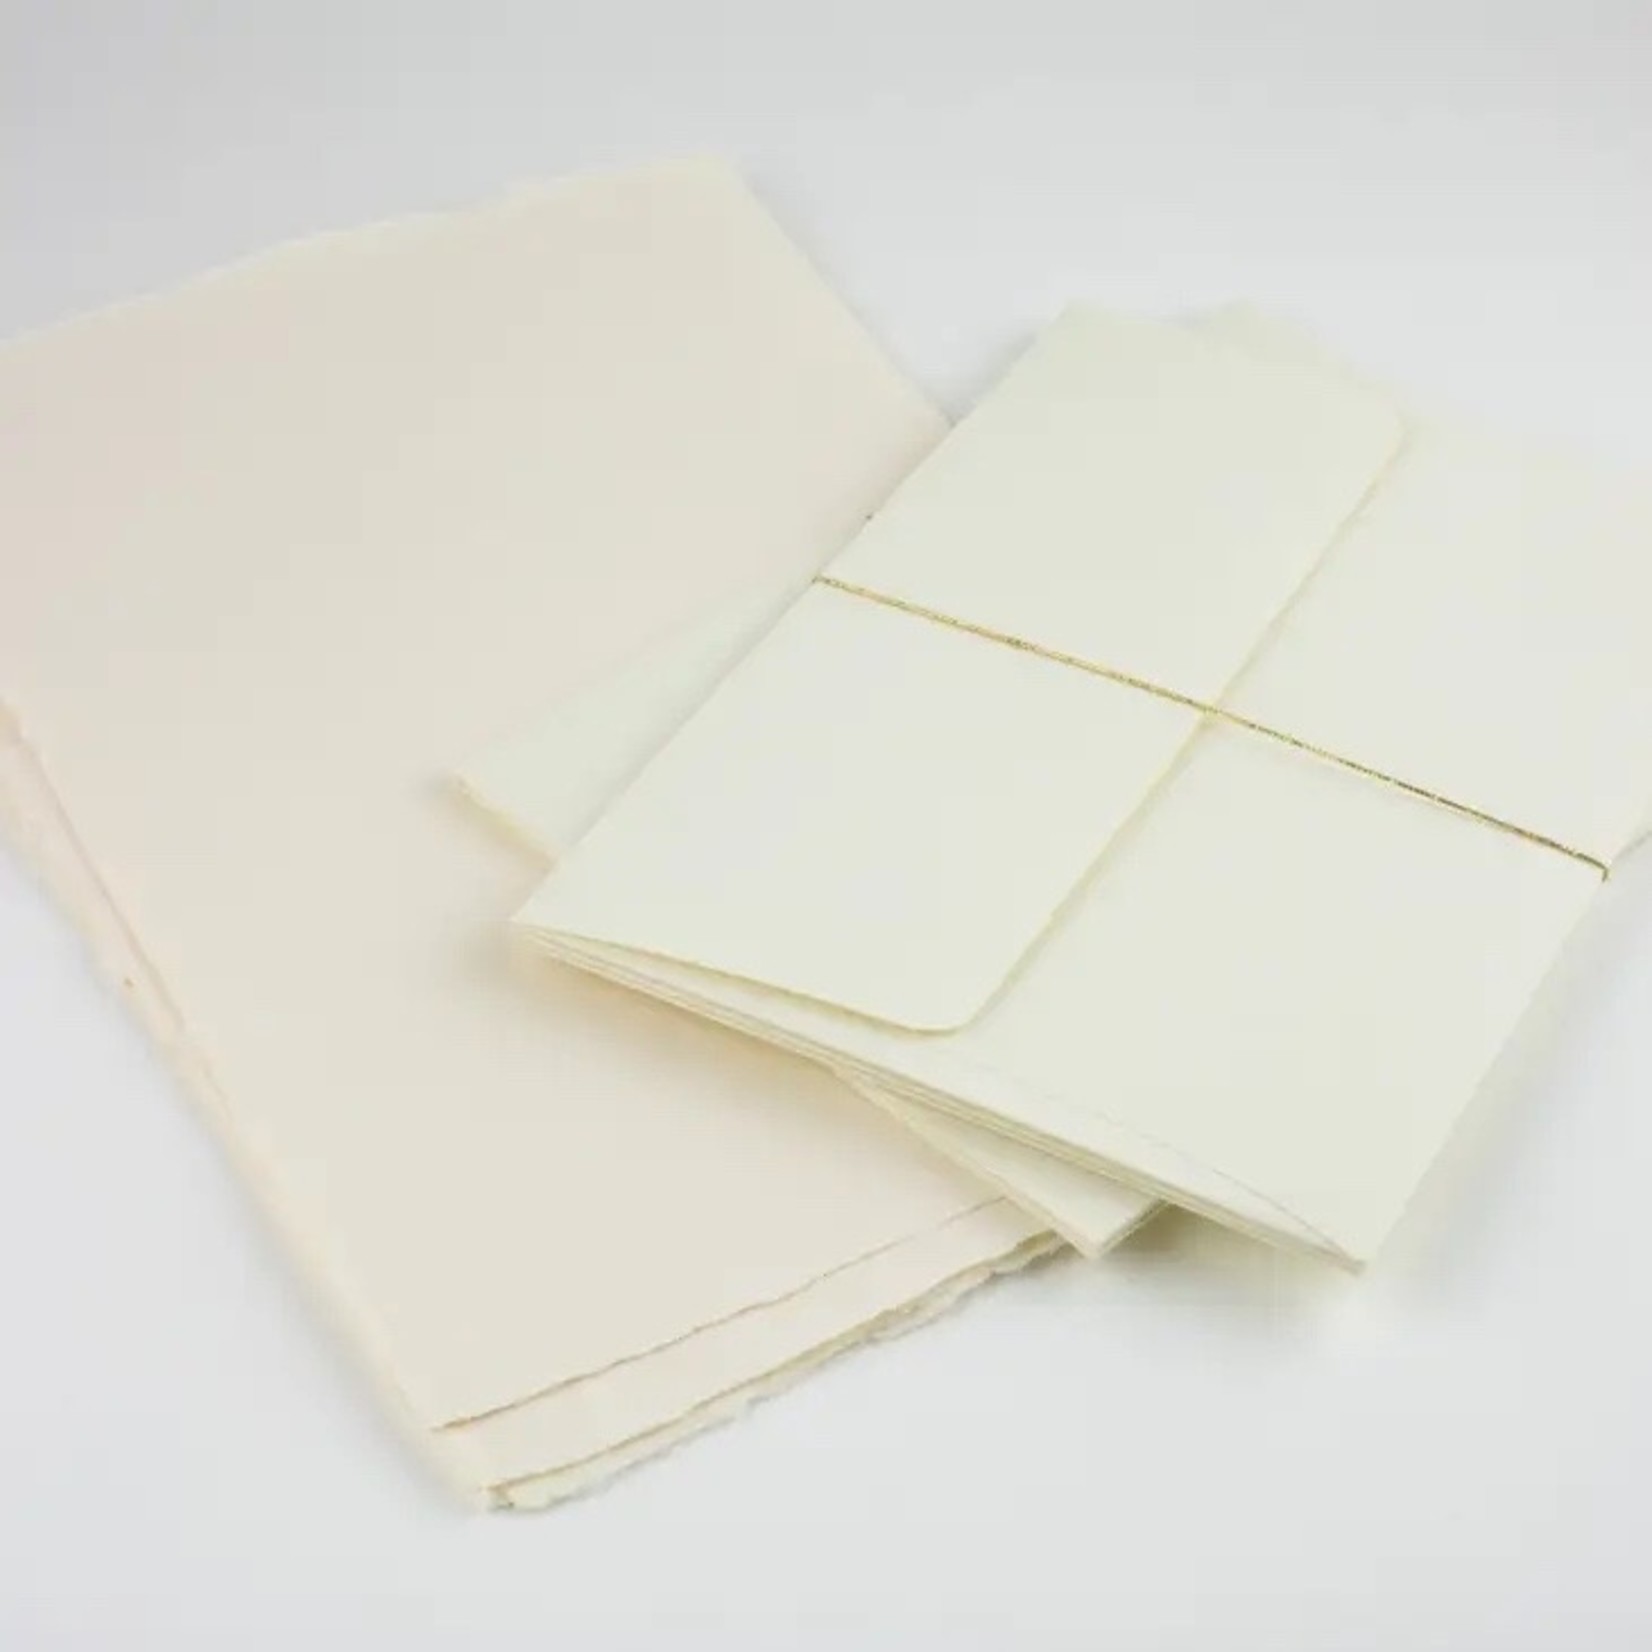 Oblation Paper Press Cream Handmade Paper Letter Sheet